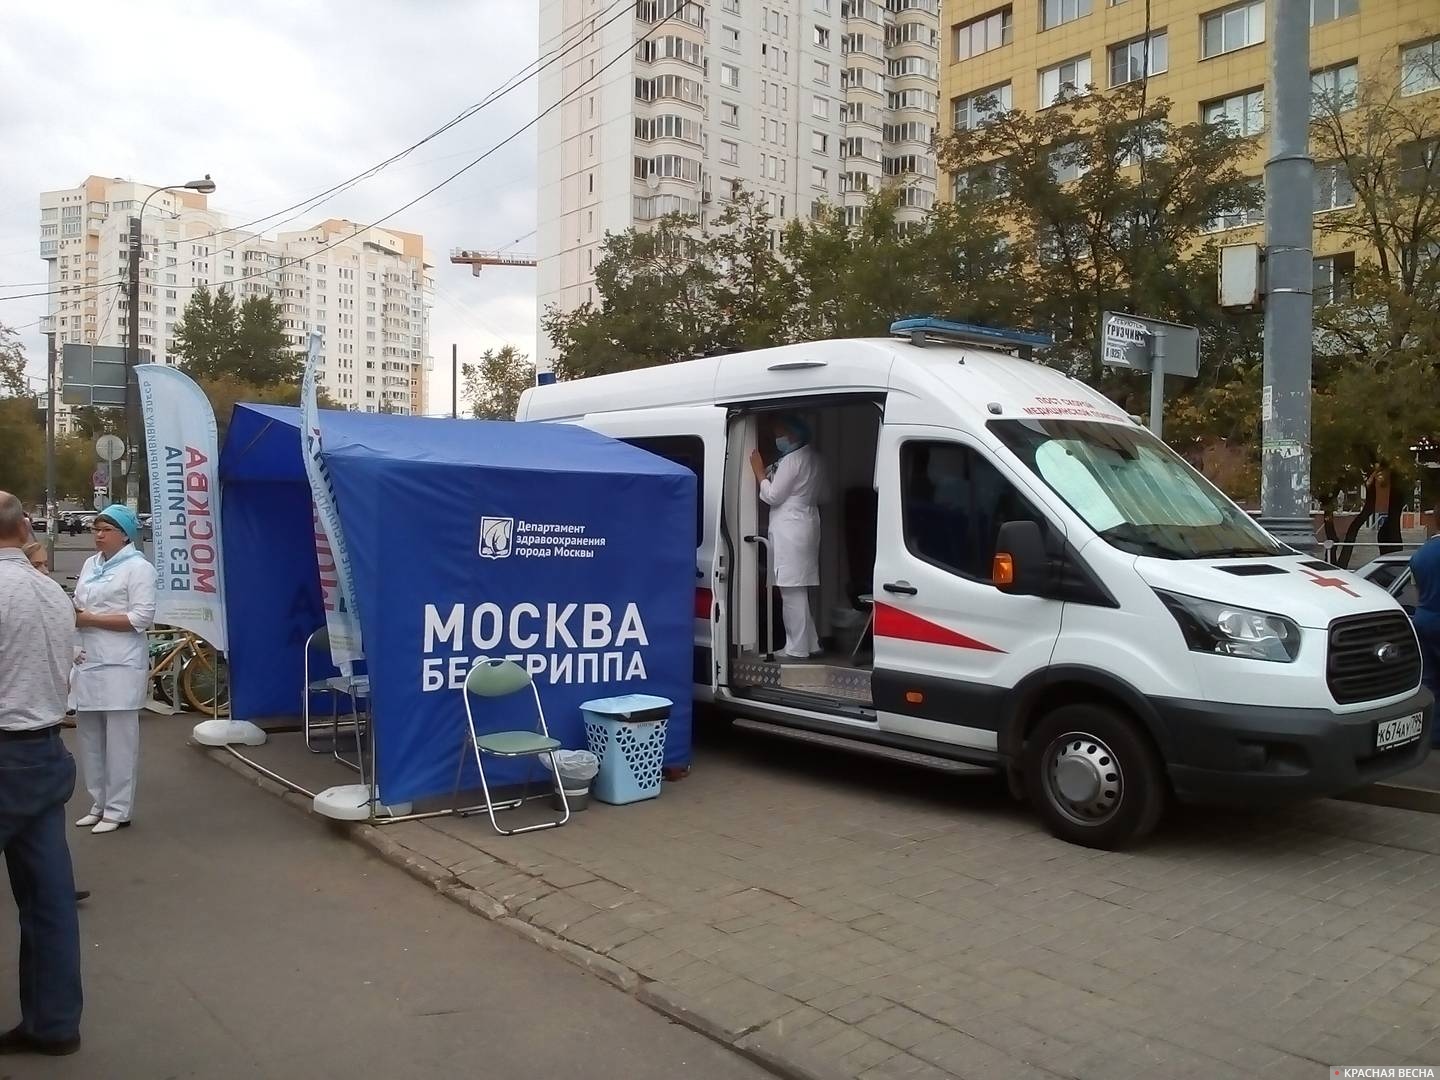 Вакцинация на улице. Москва без гриппа